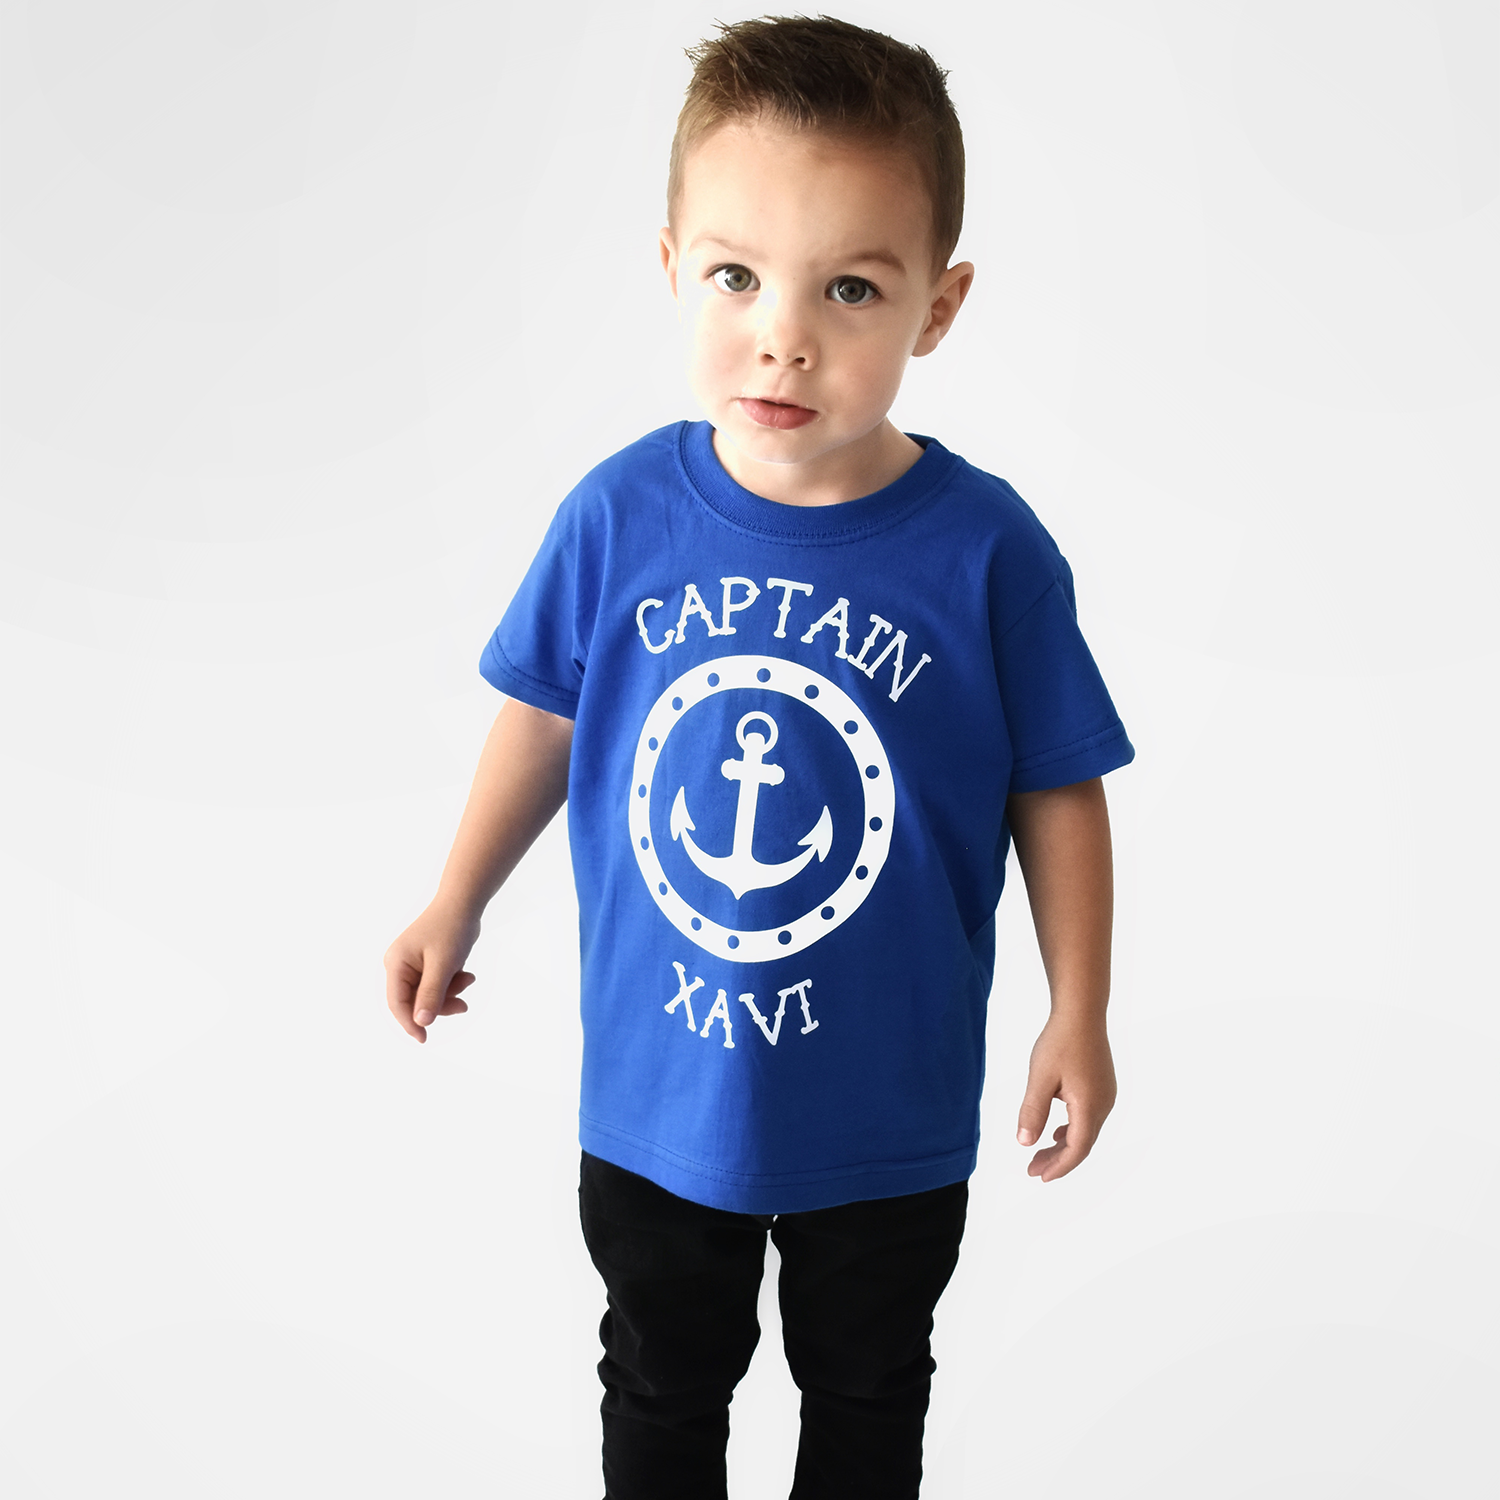 'Captain' kids shortsleeve shirt